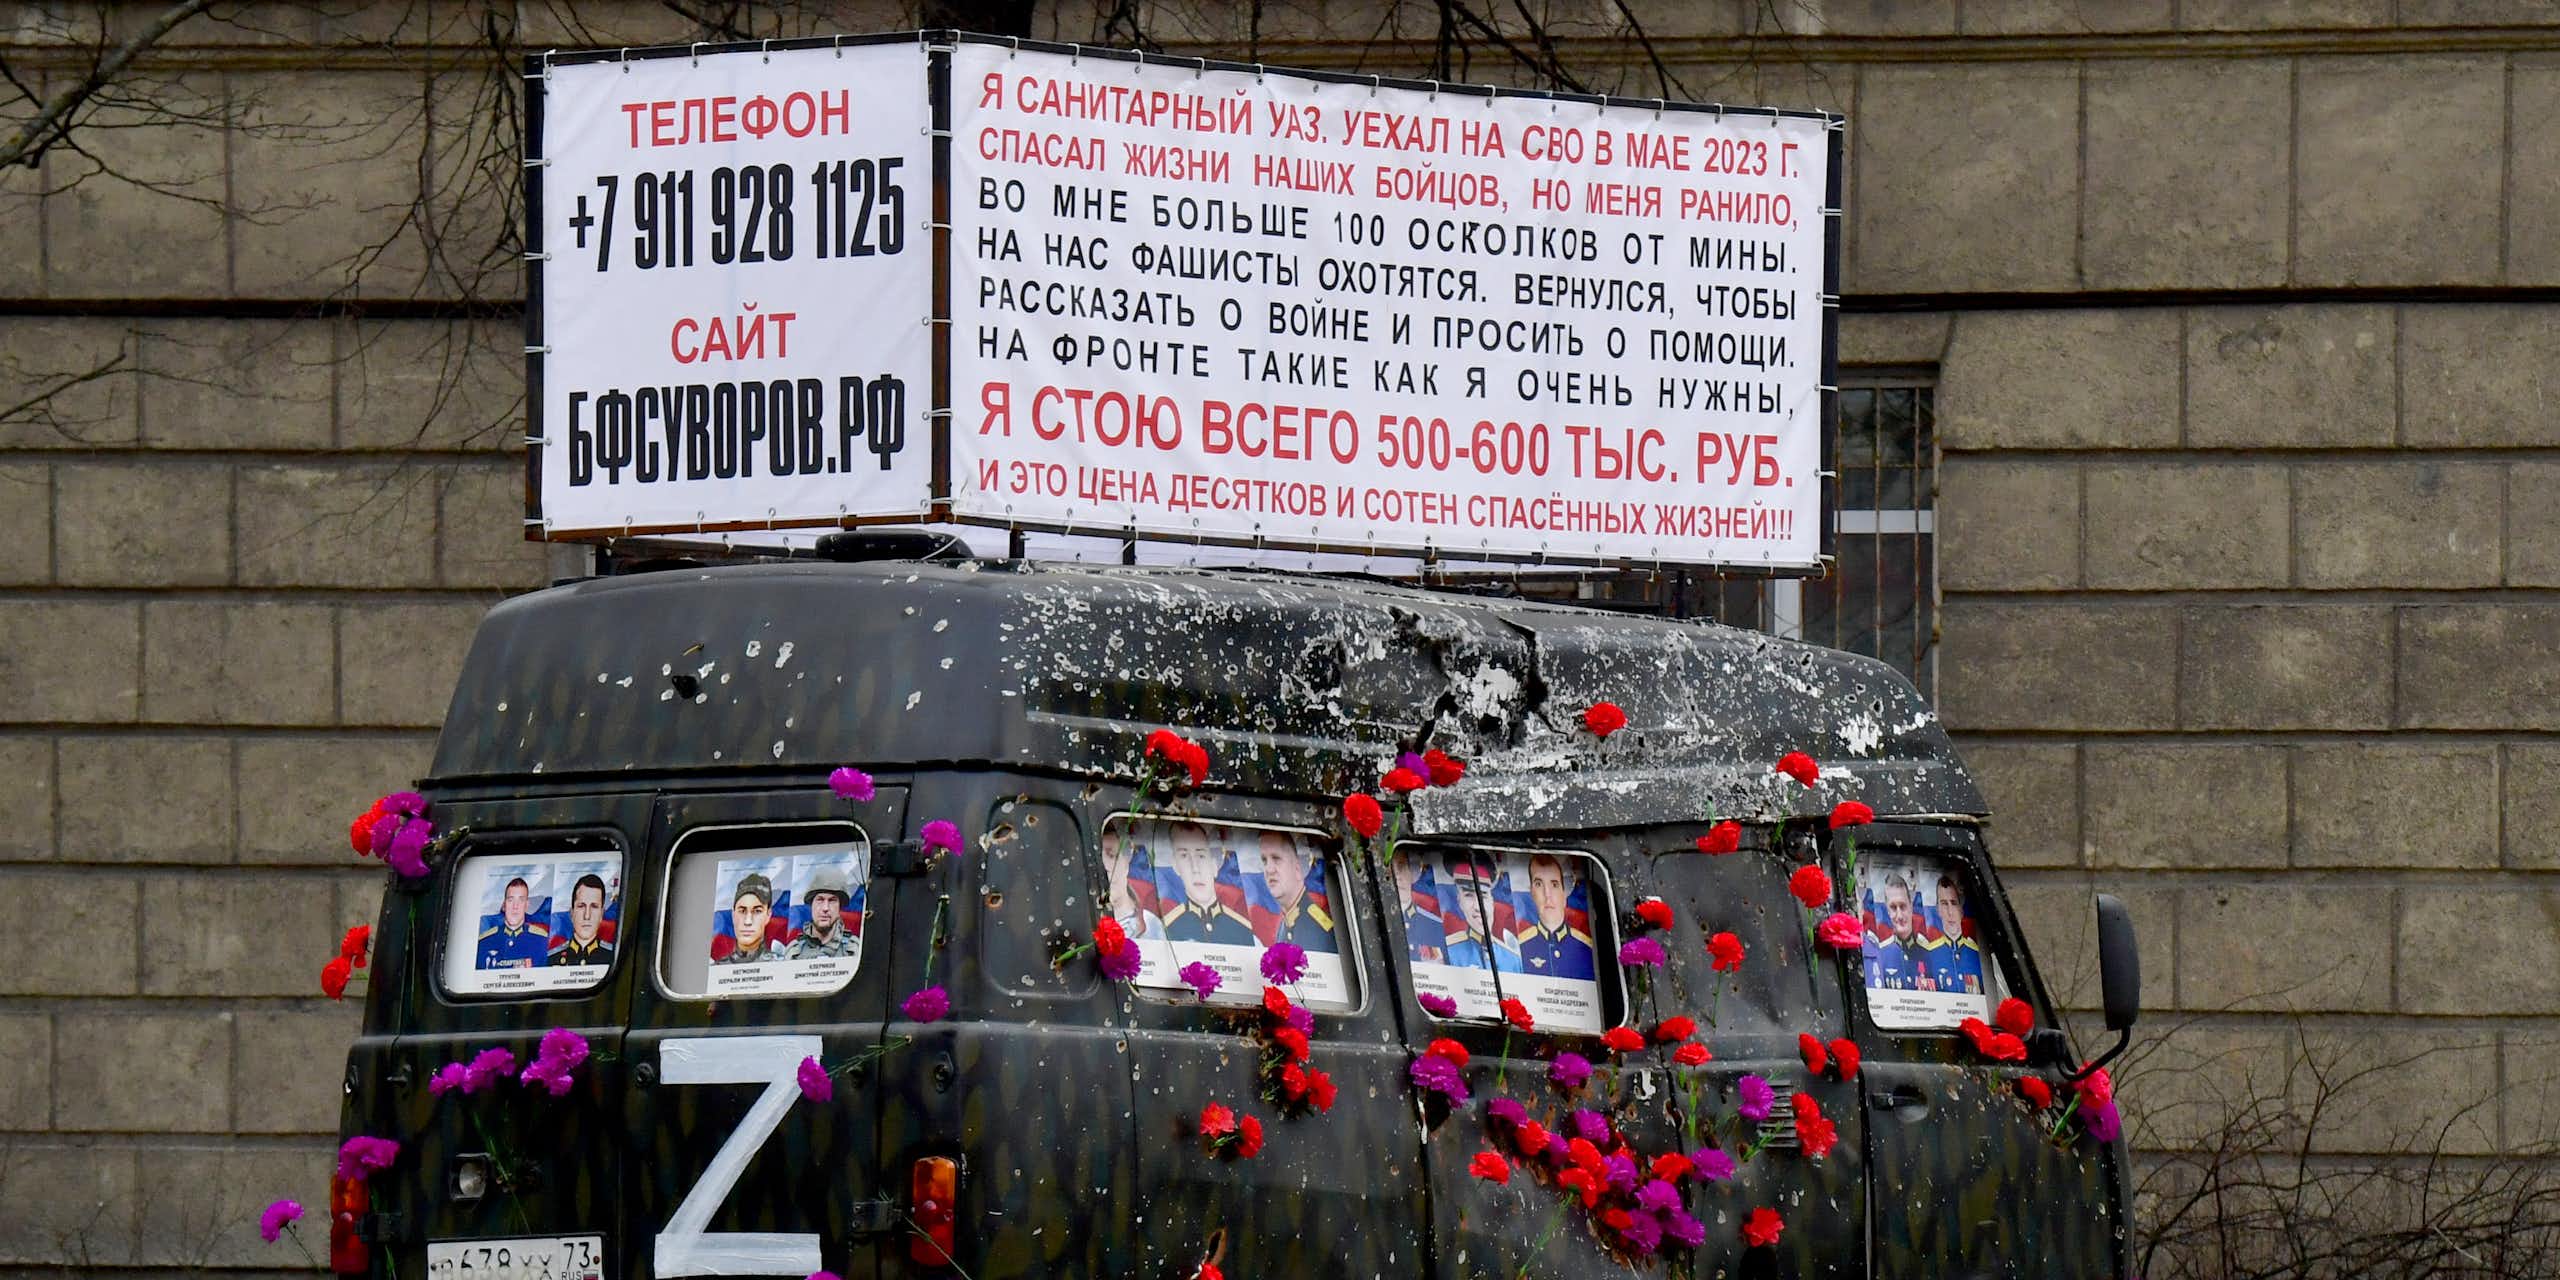 Van surmonté d'une inscription en russe appelant les passants à donner de l'argent pour financer l'effort de guerre russe en Ukraine